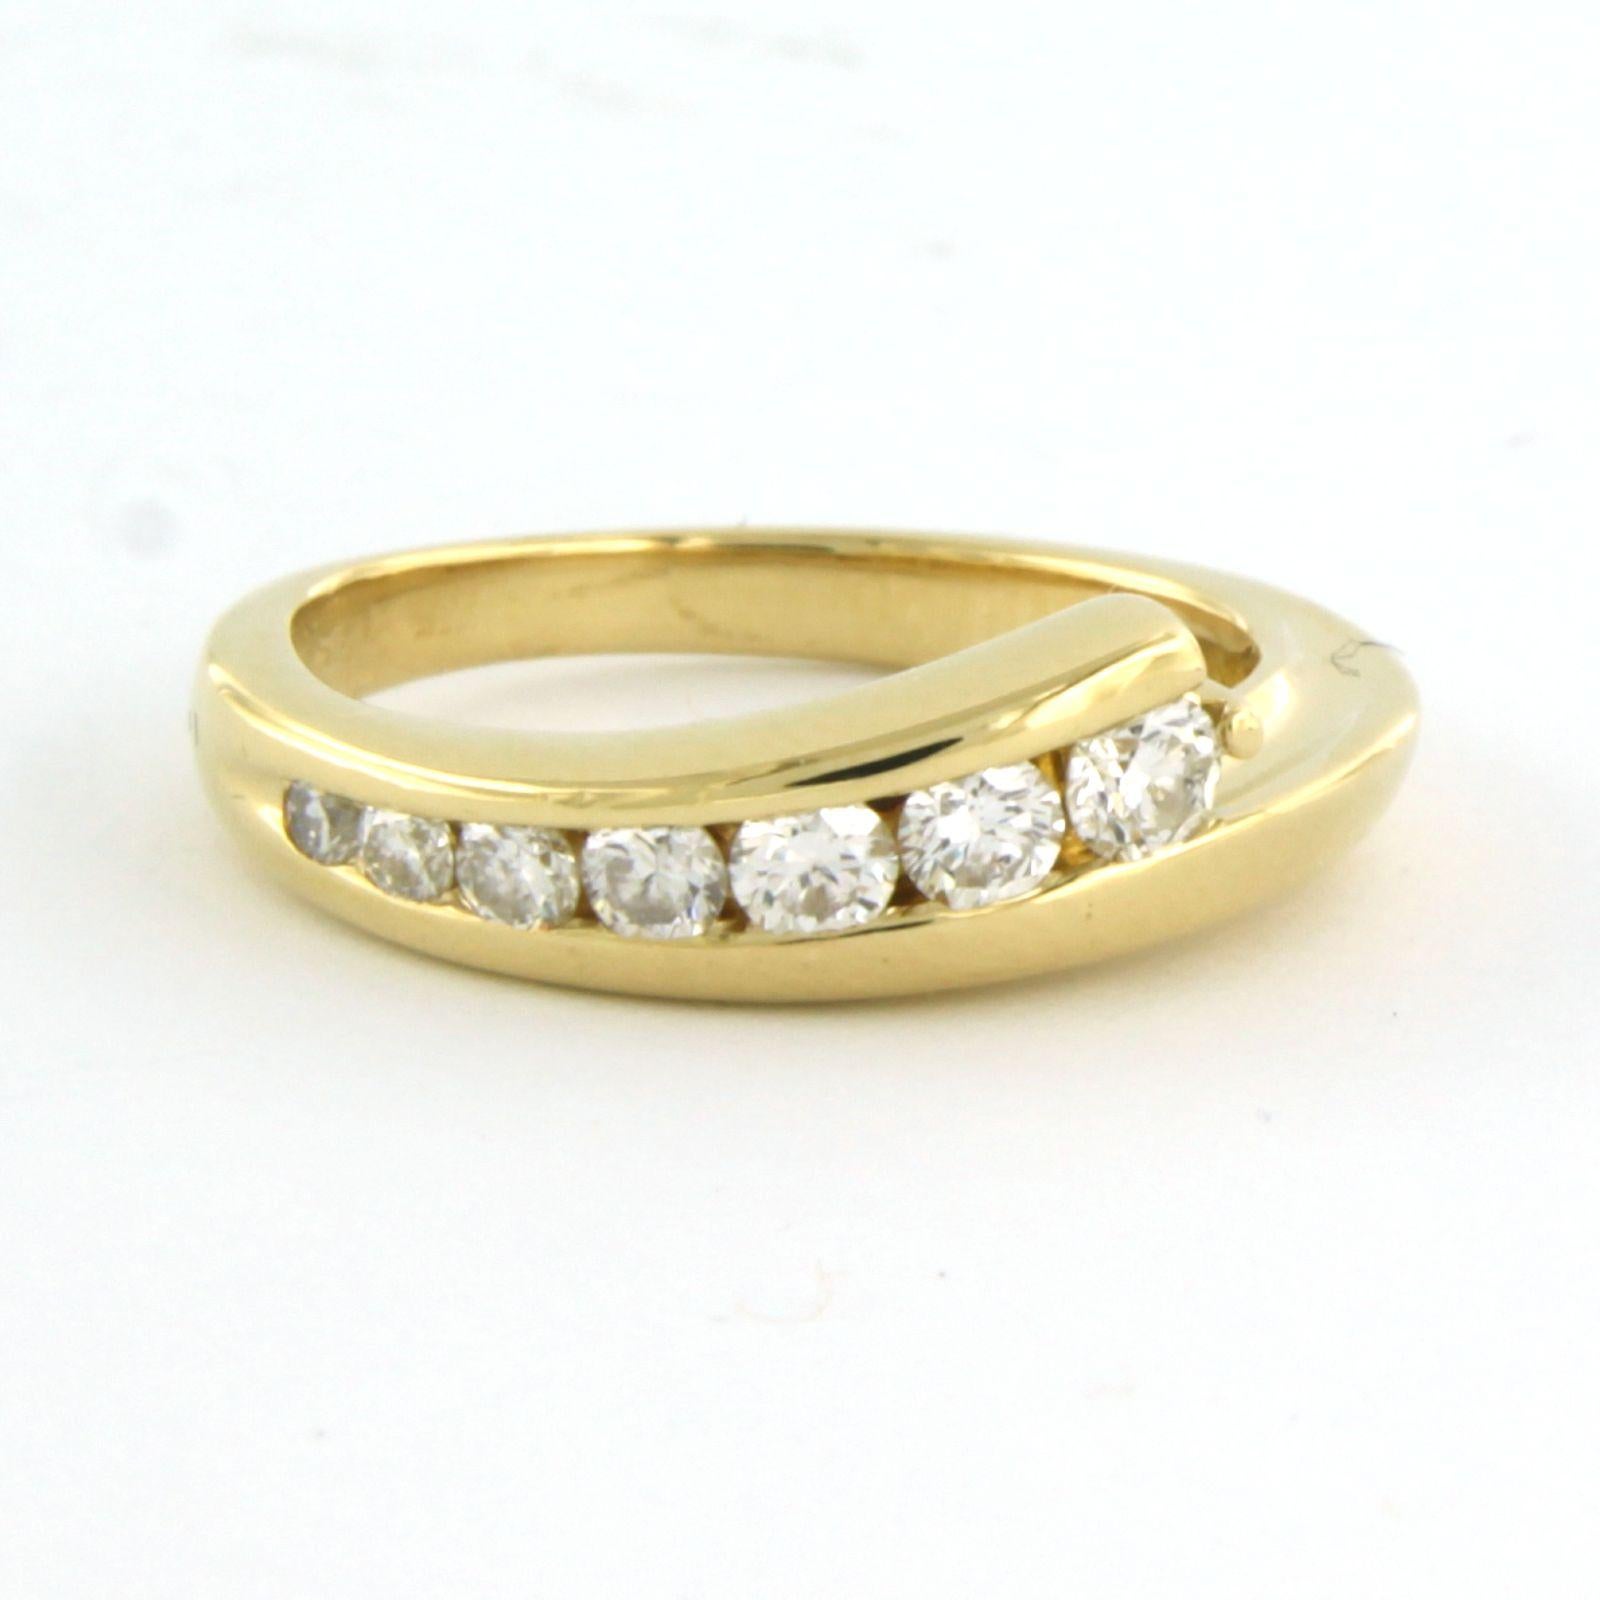 Ring aus 18 kt Gelbgold, besetzt mit Diamanten im Brillantschliff. 0,50 ct - F/G - VS/SI - Ringgröße U.S. 6 - EU. 16.5(52)

detaillierte Beschreibung:

die Oberseite des Rings ist 6.5 mm breit

Ringgröße U.S. 6 - EU. 16.5(52), der Ring kann gegen